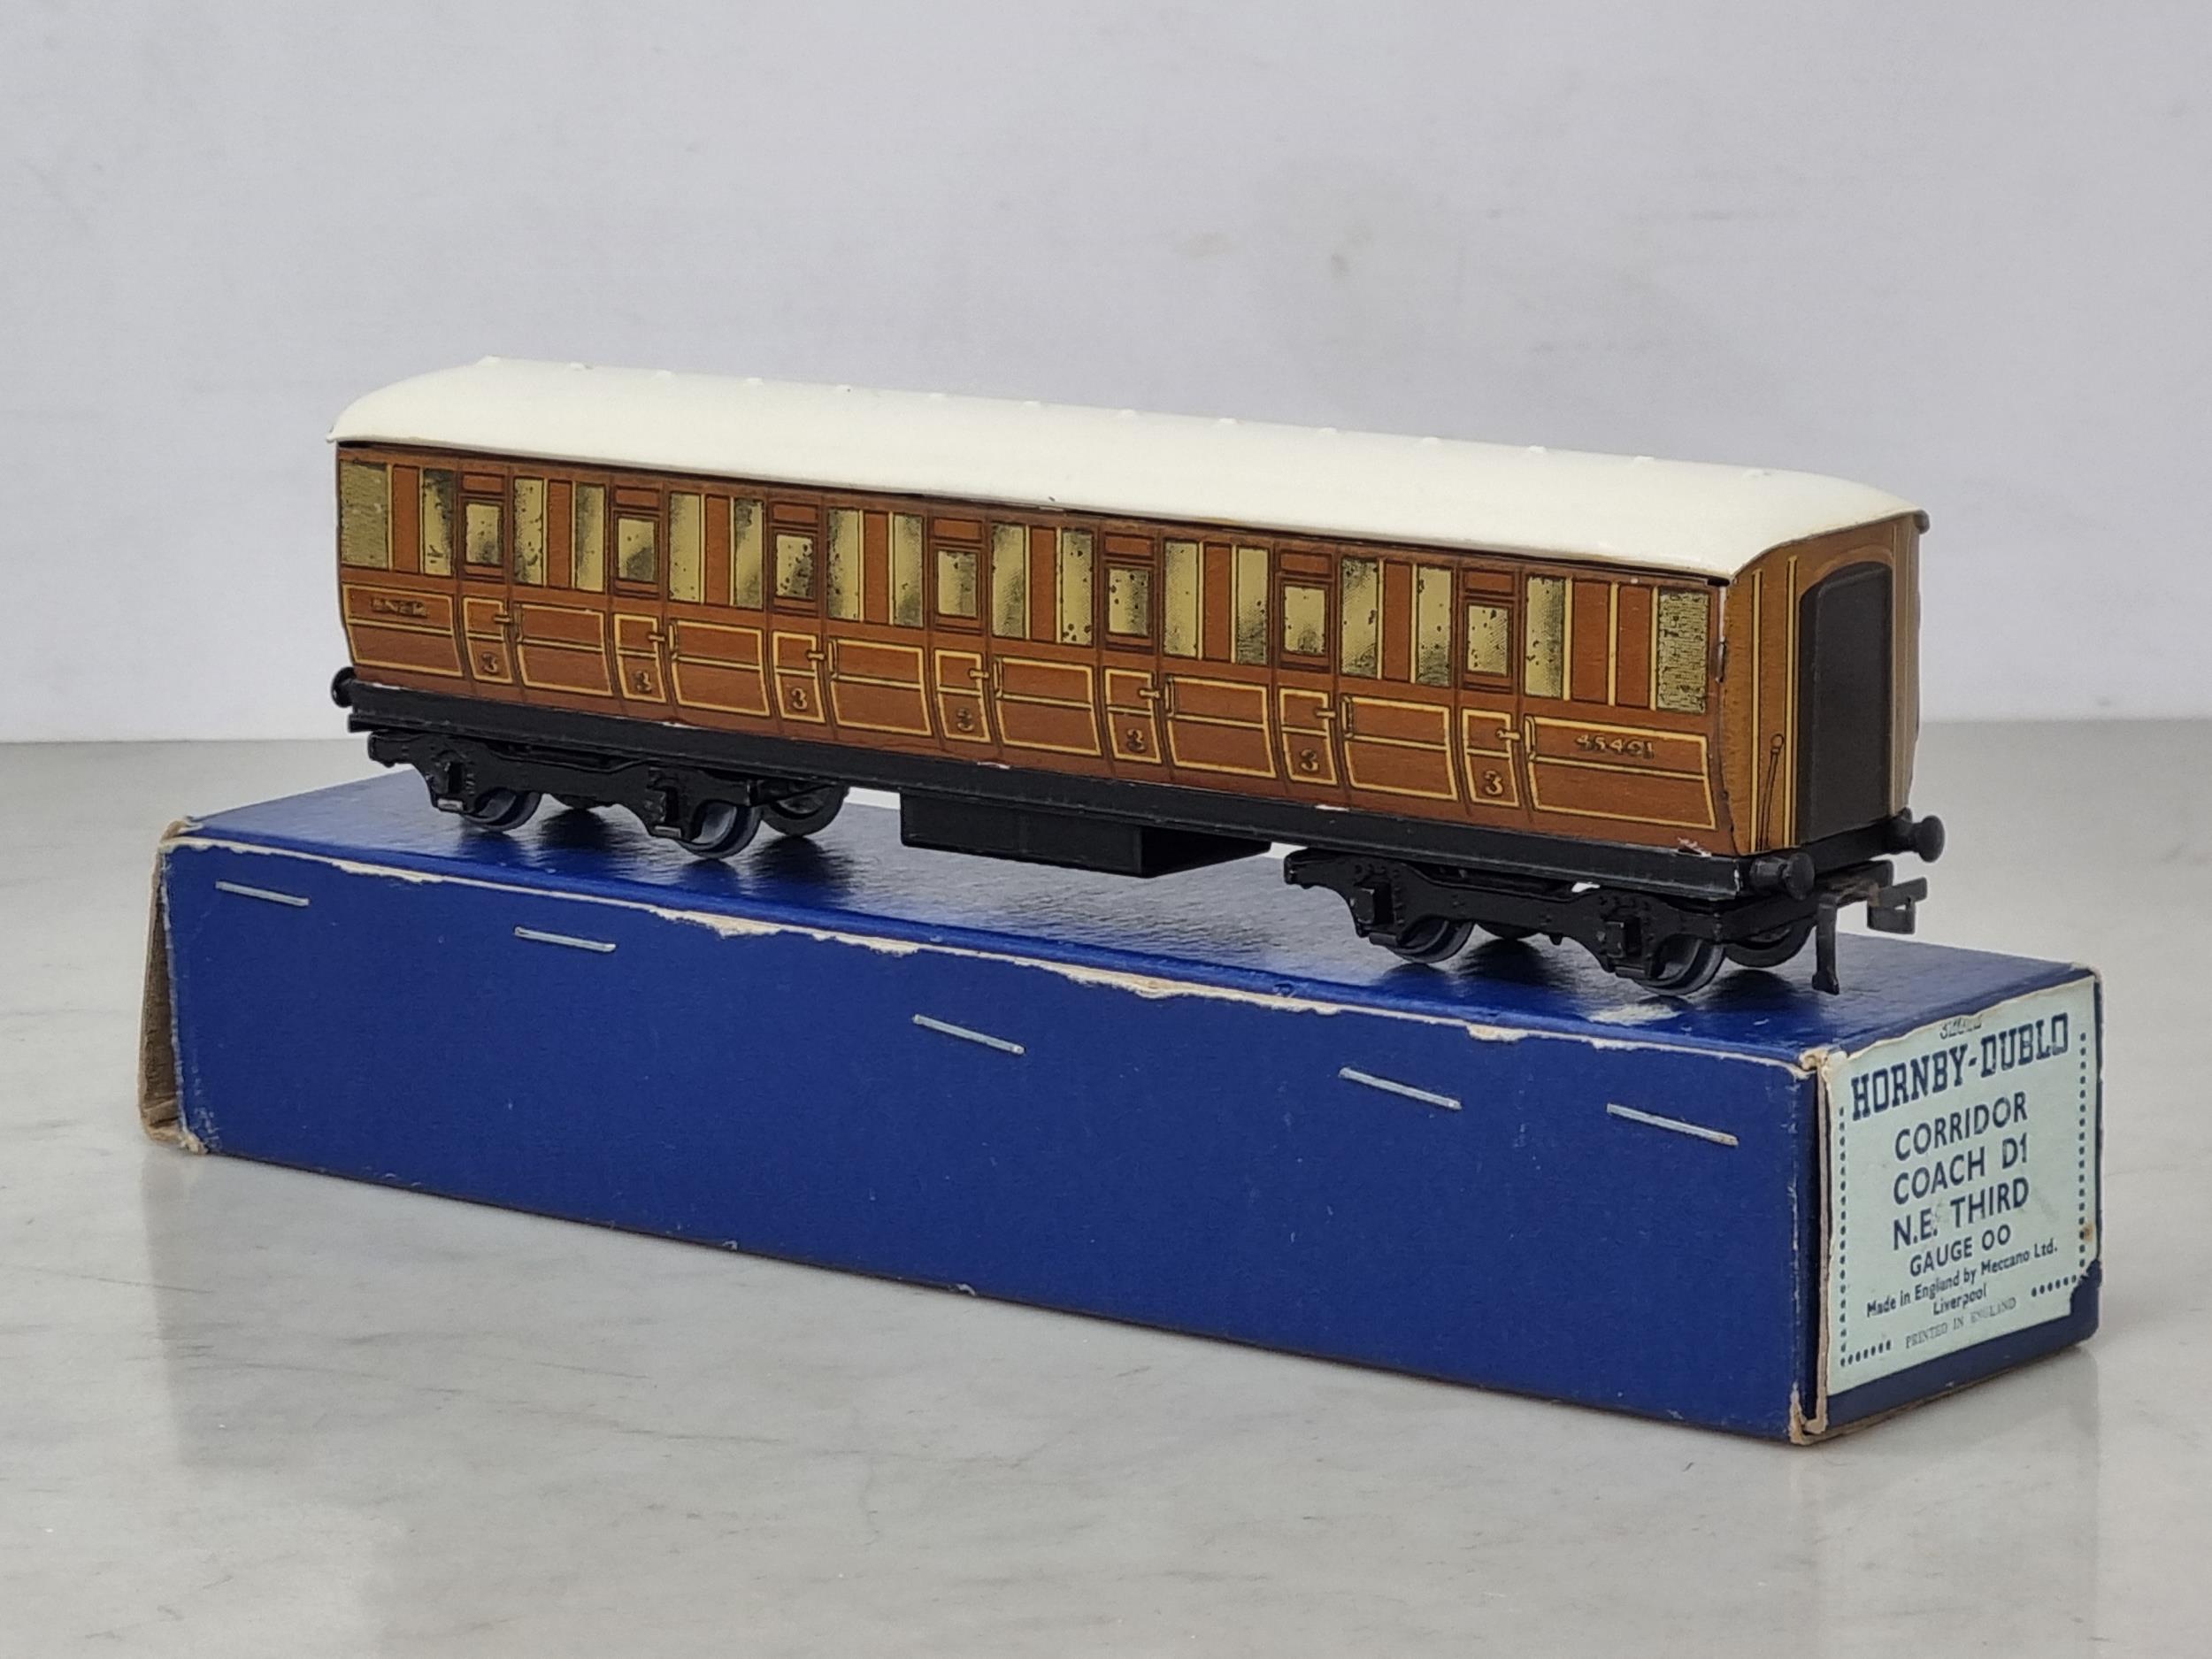 A boxed Hornby Dublo D1 L.N.E.R. all 3rd Corridor Coach, near mint in dark blue plain box with